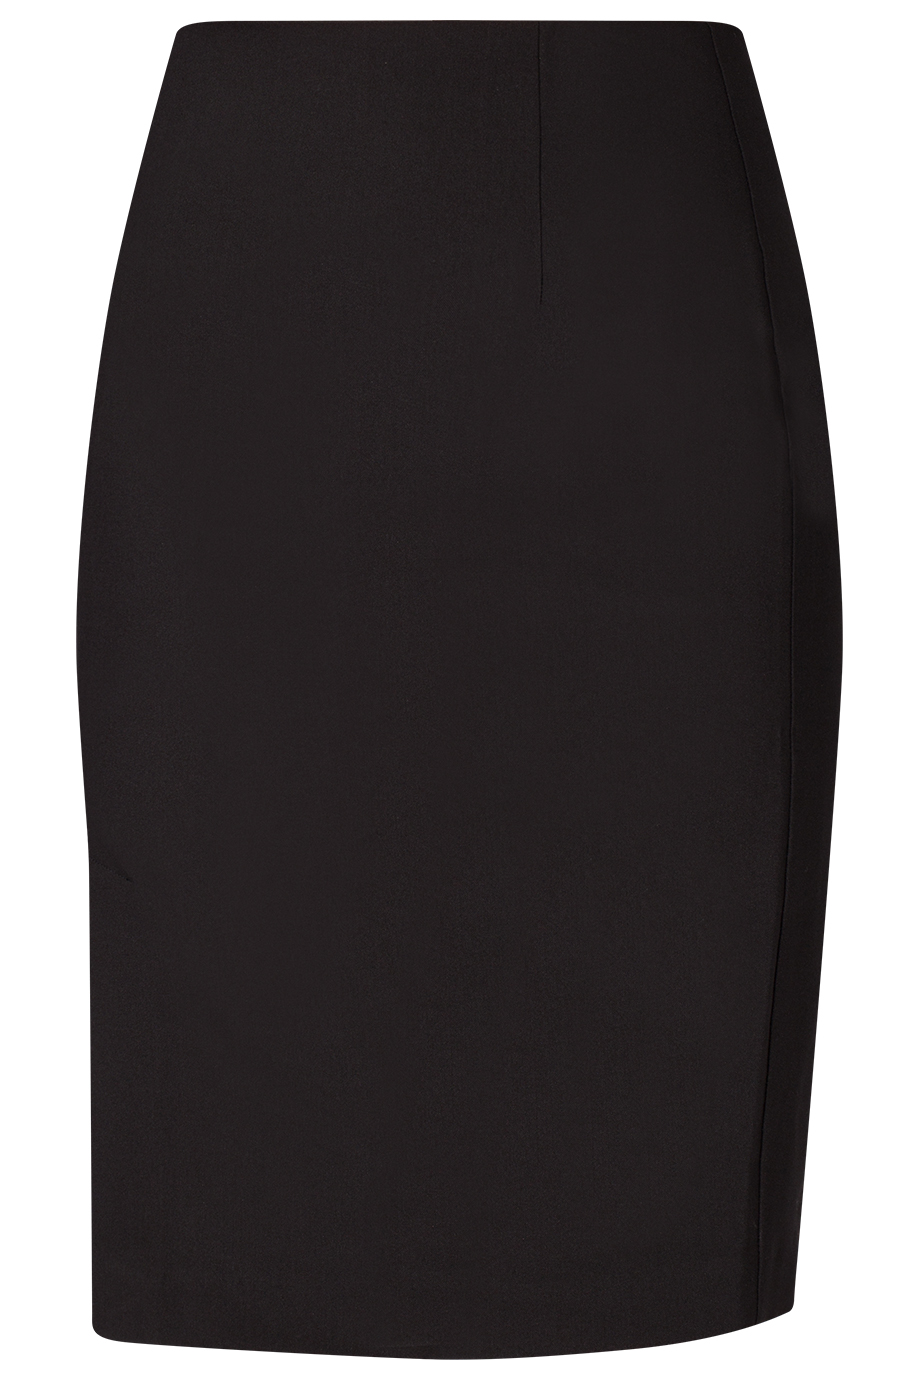 Chân váy bút chì xẻ đùi Angela Suit Skirt/ Black